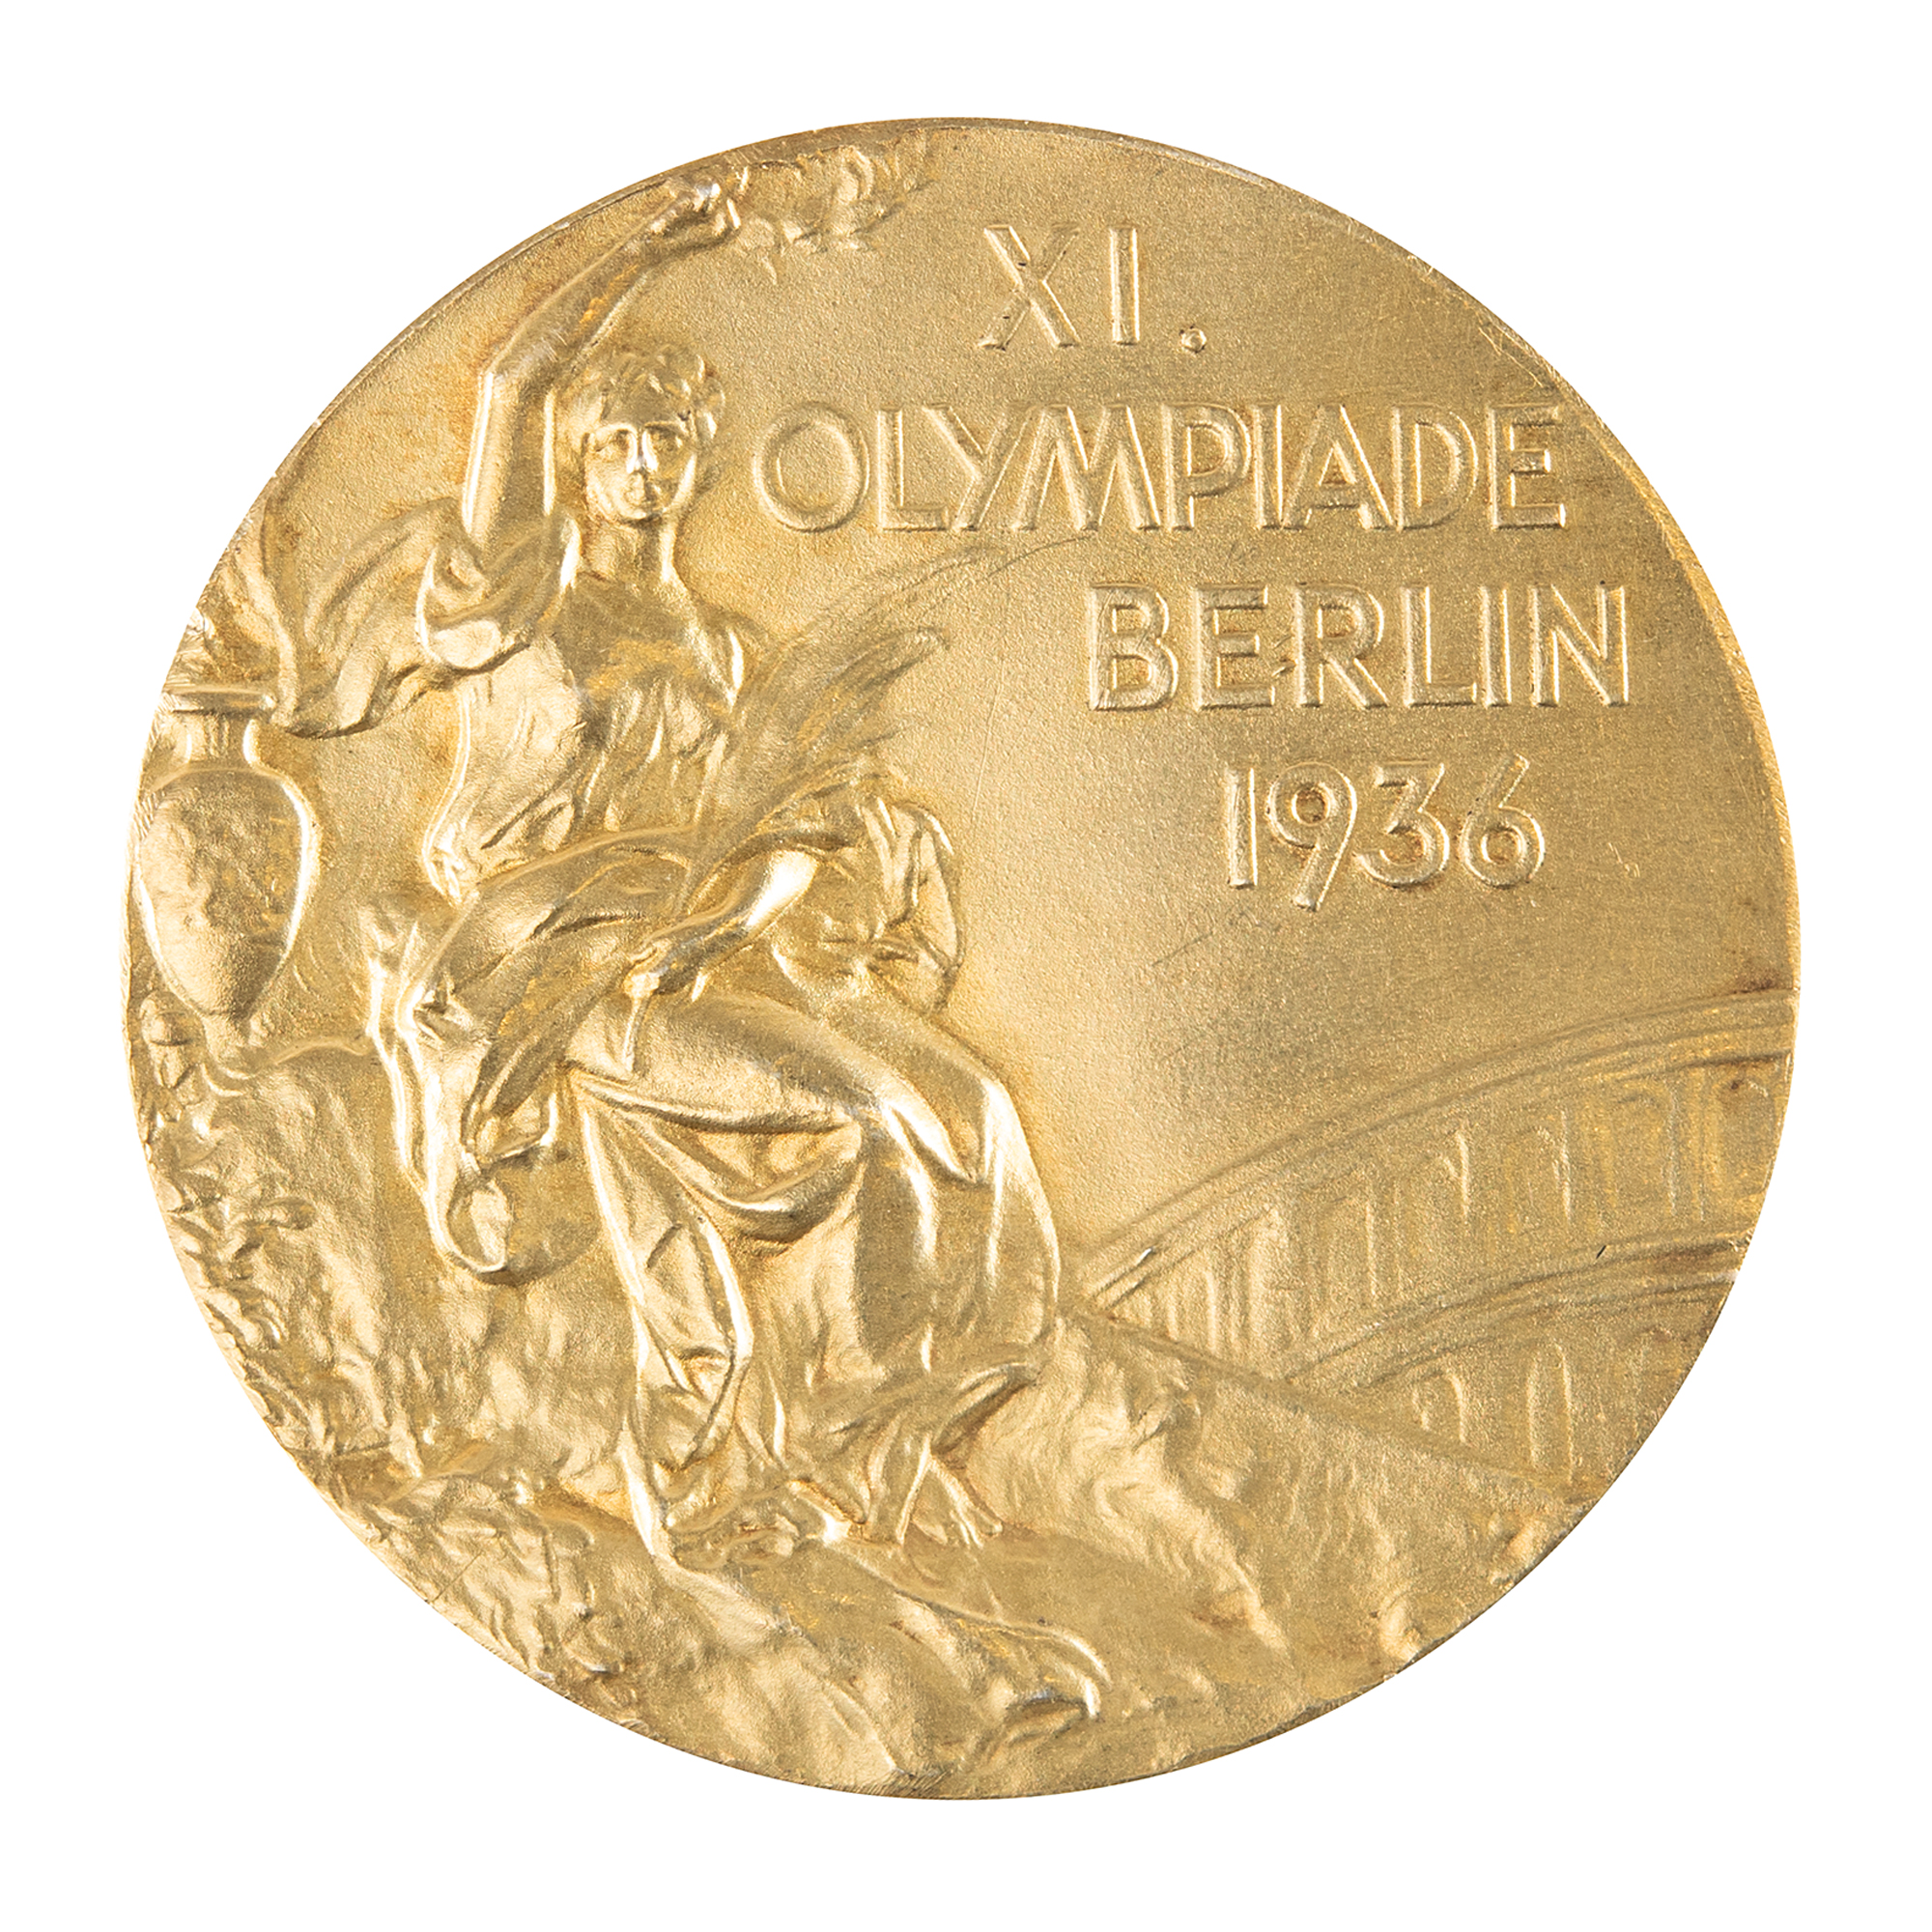 Lot #4053 Berlin 1936 Summer Olympics Gold Winner's Medal